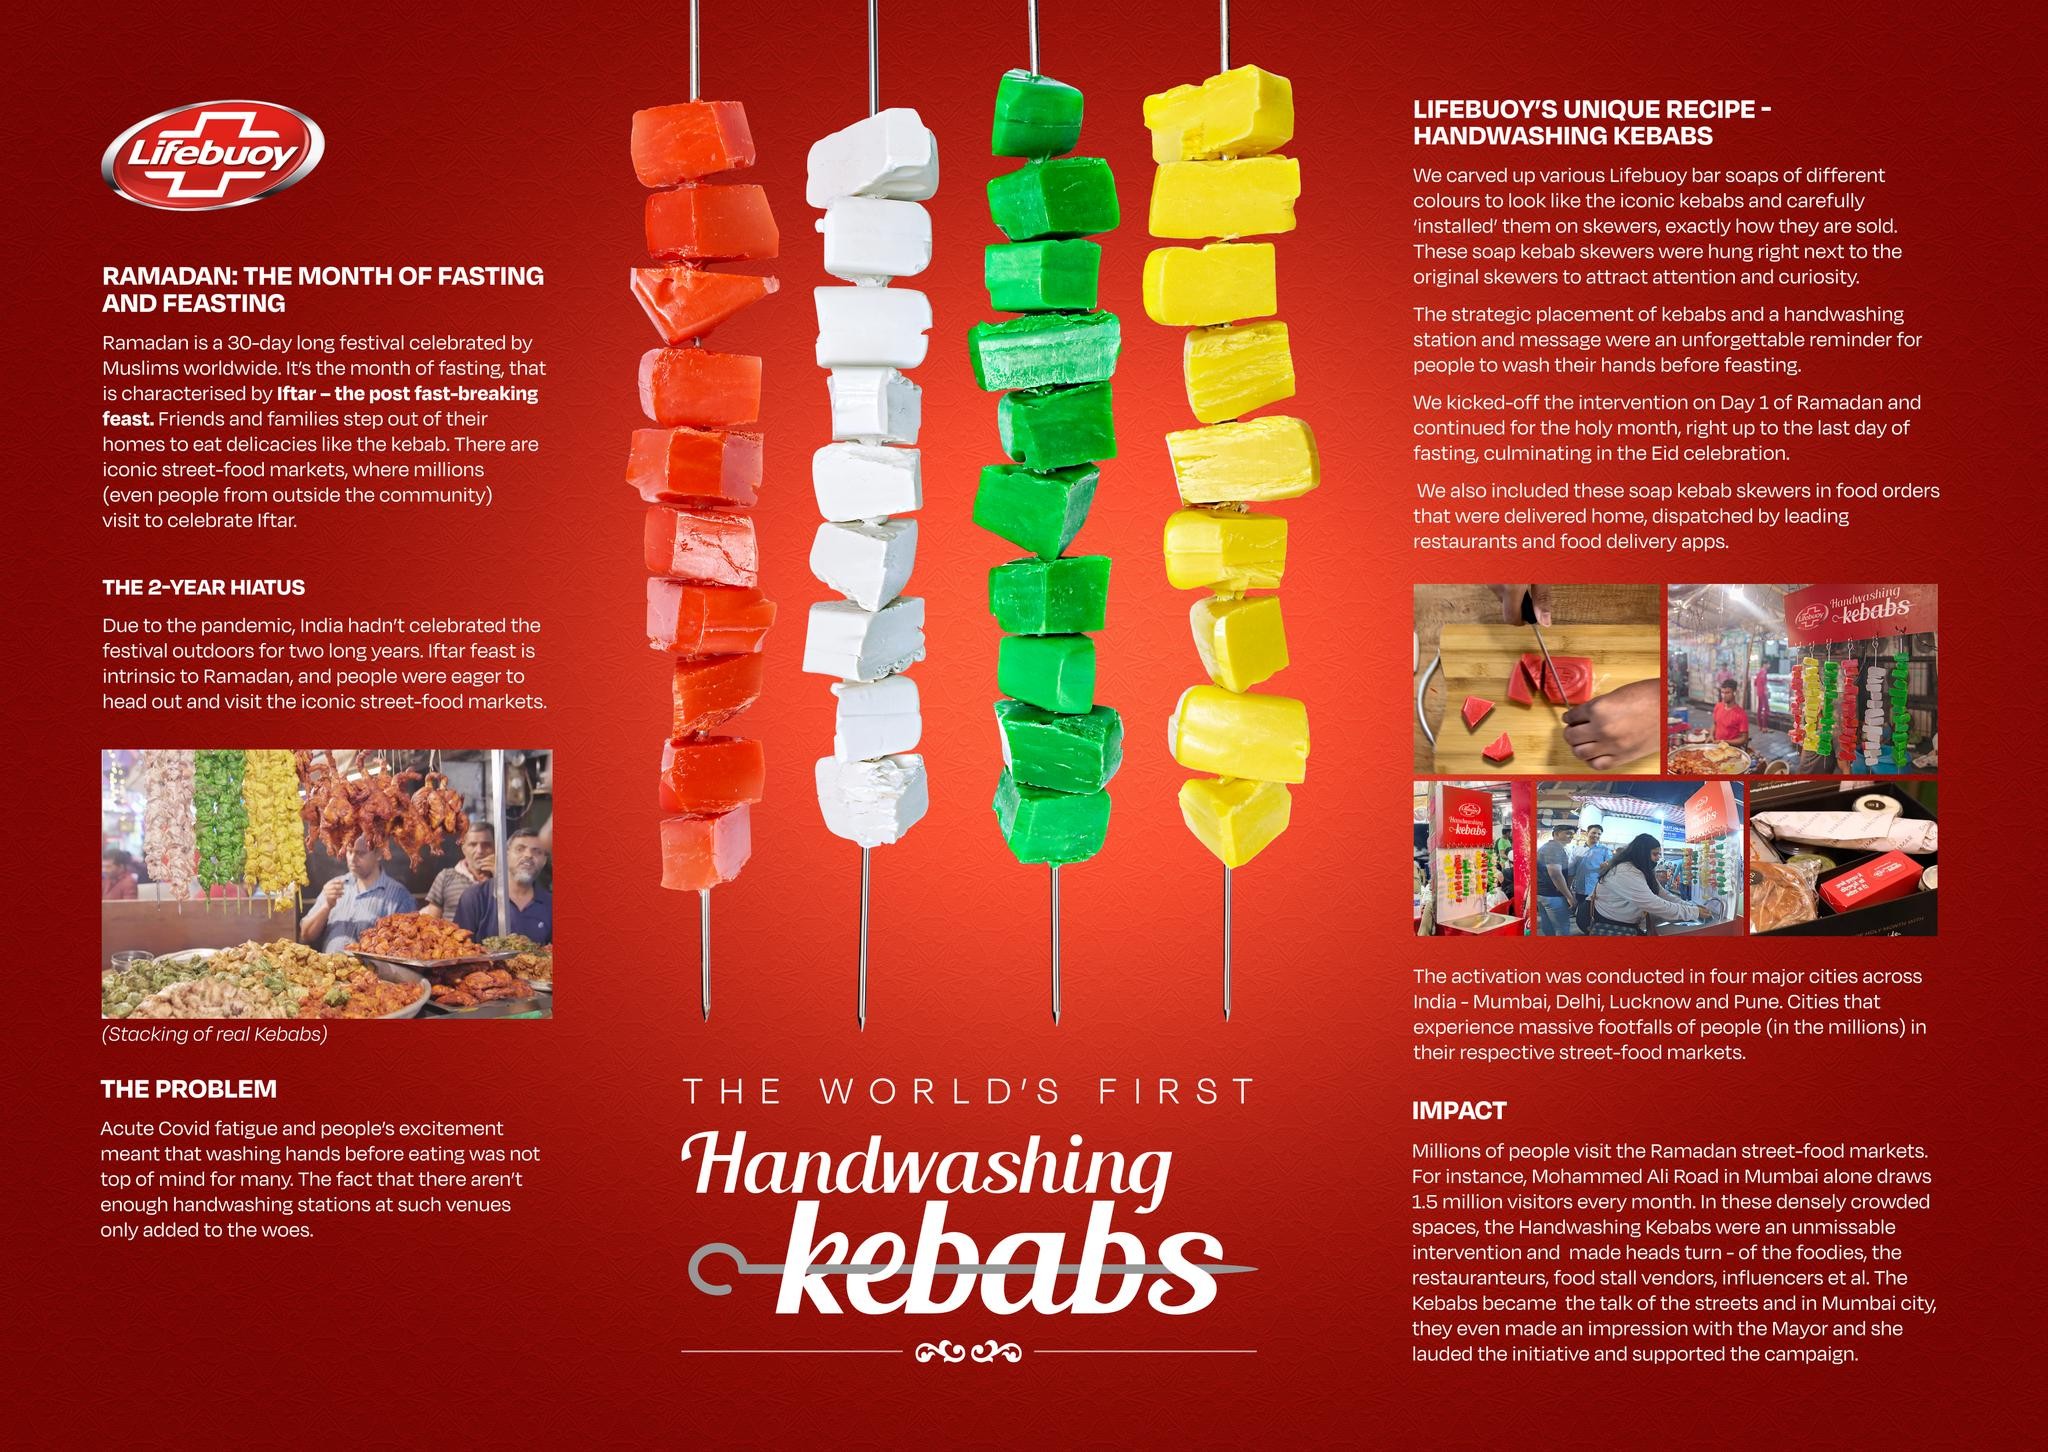 Handwashing Kebabs